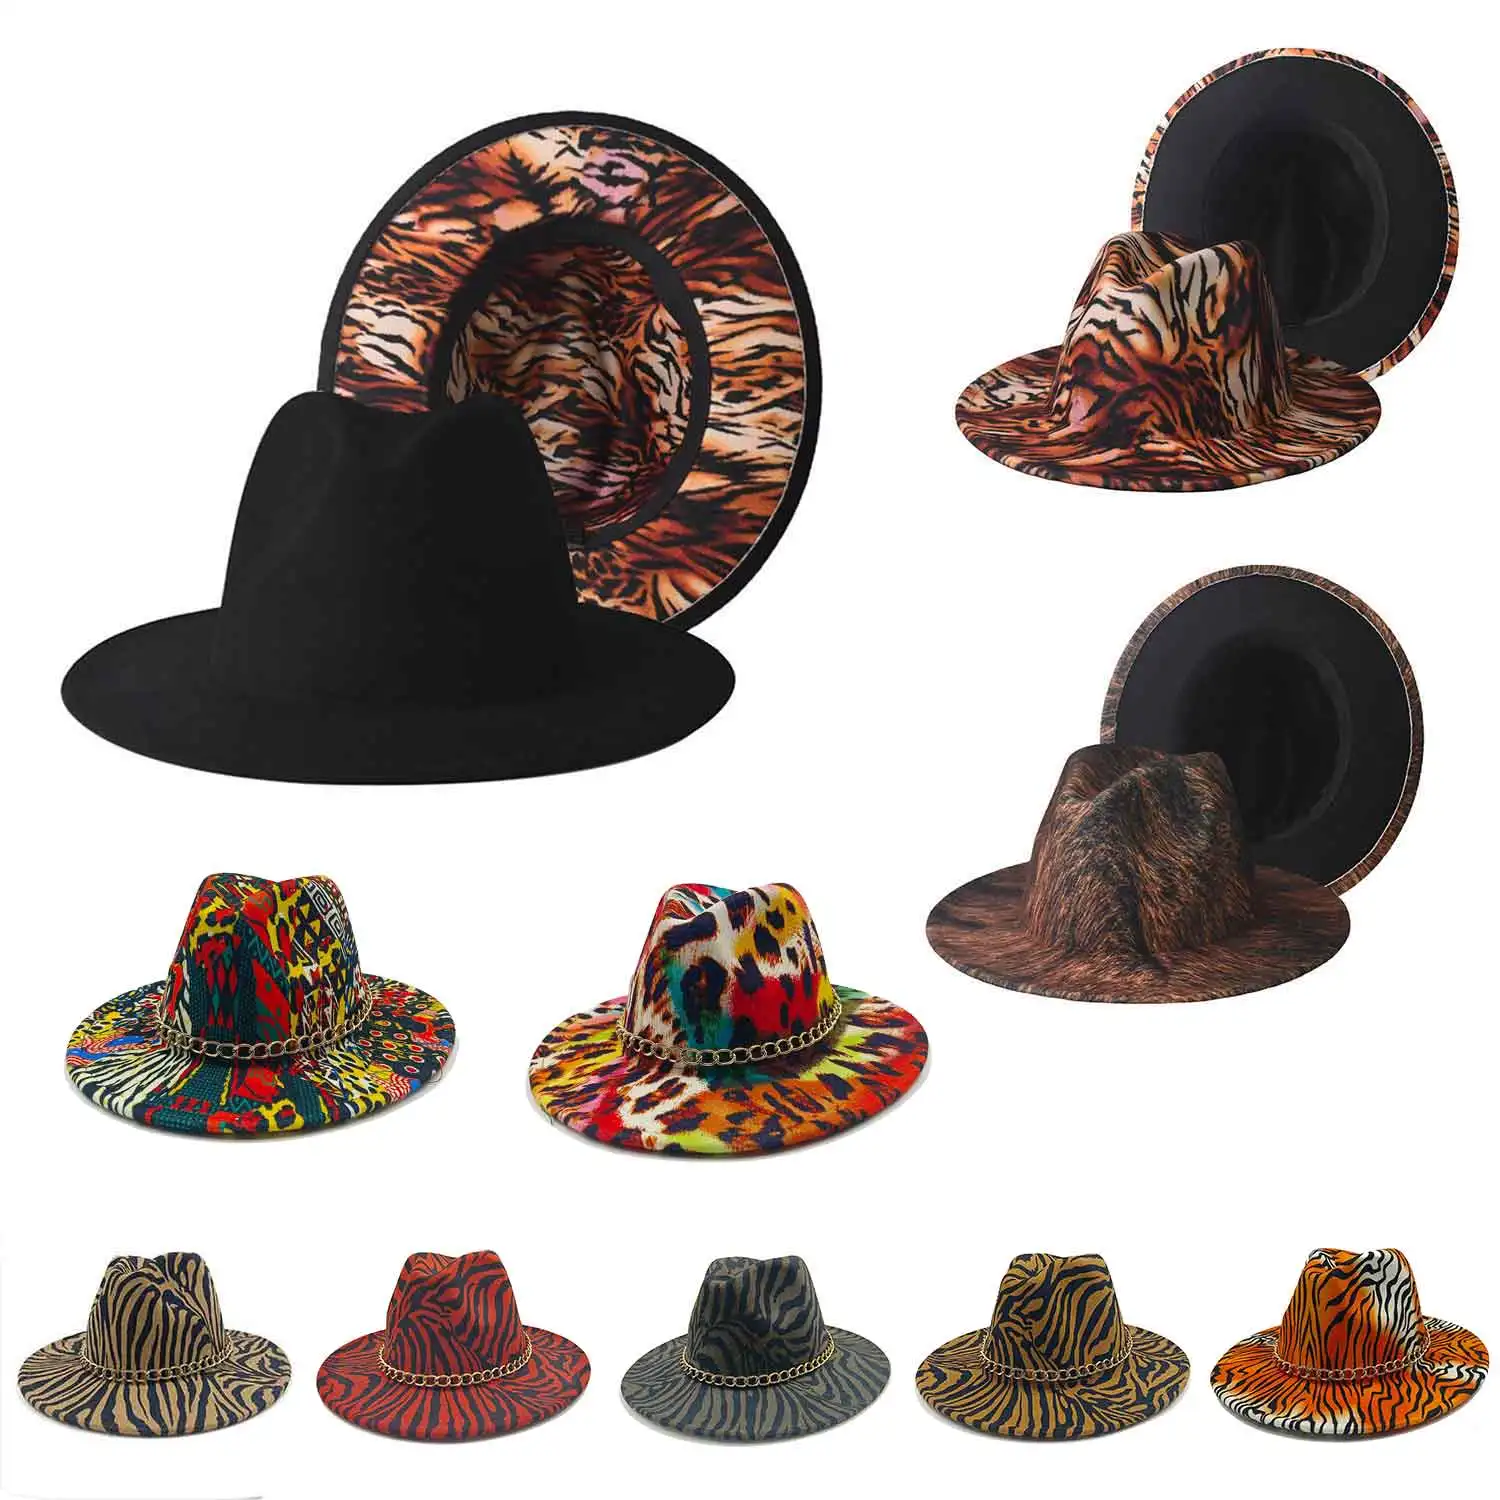 Erkek Şapka Tuo tonlu Fedoras Şapka Kadınlar İçin Unisex Moda Fedoras Retro Panama kilise şapkaları kovboy şapkaları Sonbahar Sıcak Kap чапка